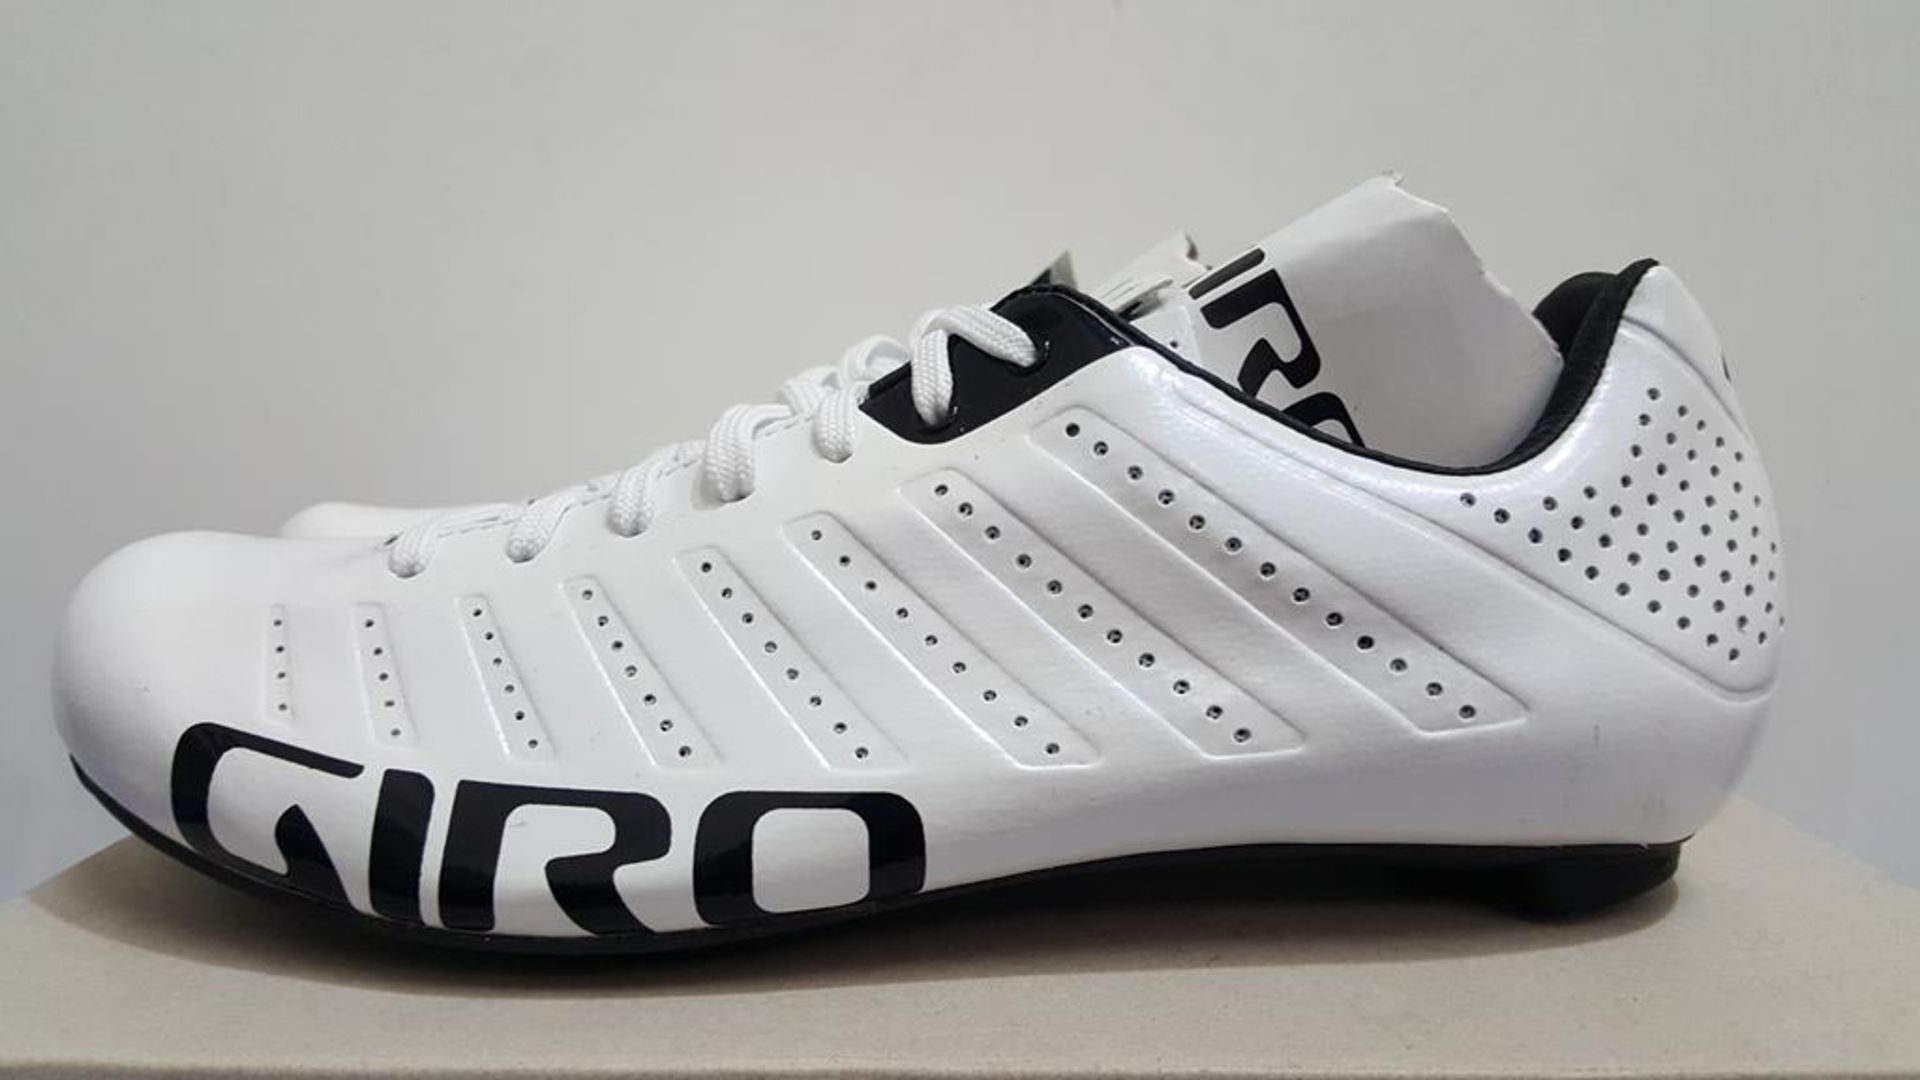 Giro Empire SLX UK Size 7 Cycling Shoes - Image 2 of 3